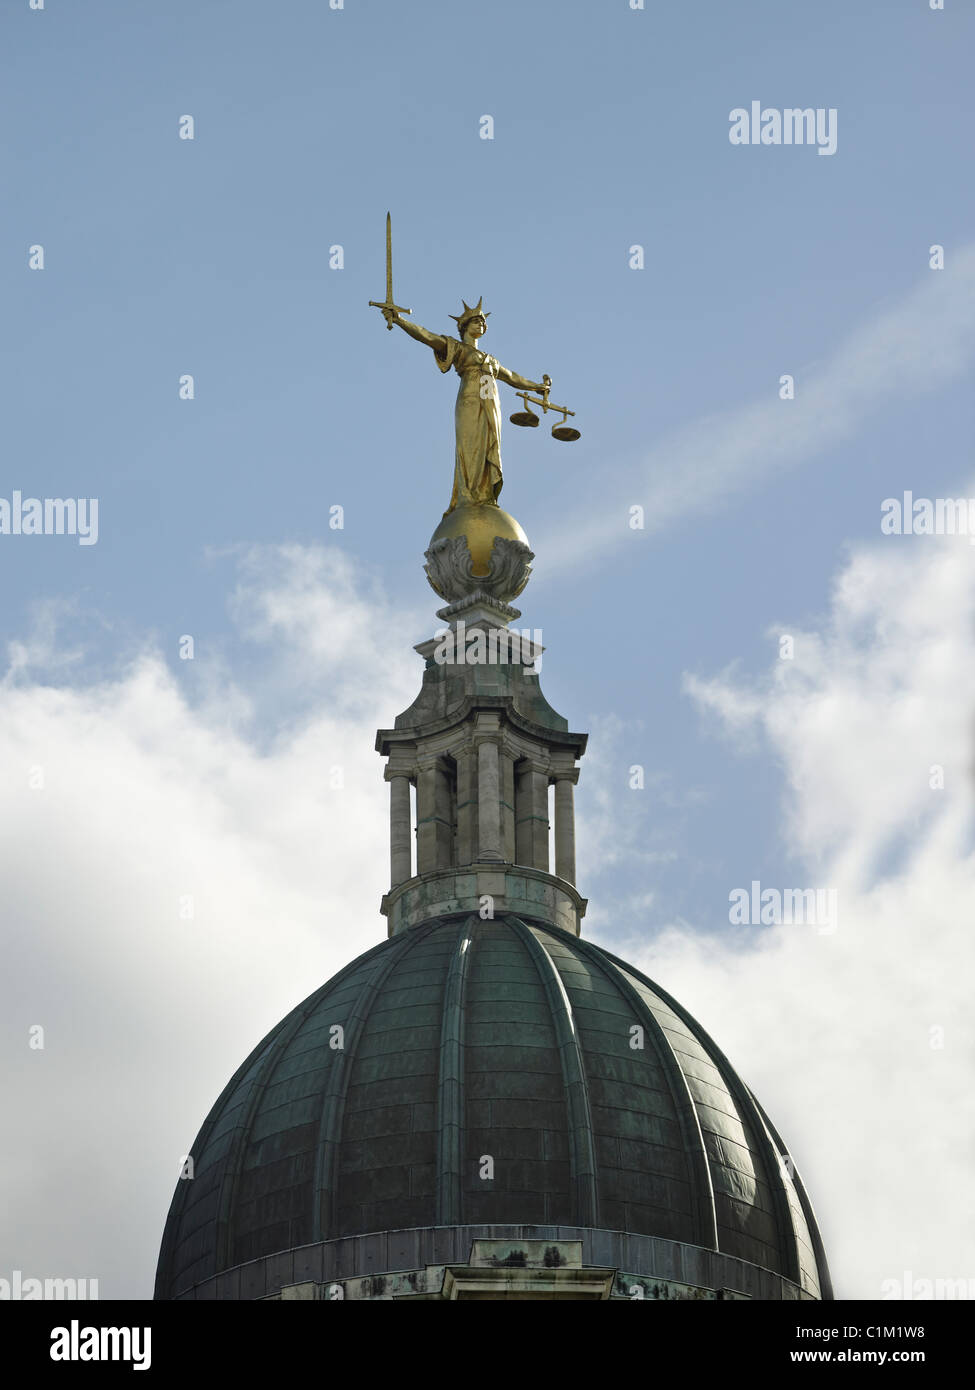 La figure de femme tenant une épée de la Justice pour la répression et l'équilibre des balances pour la justice, sur l'Old Bailey, la coopération pénale centrale Banque D'Images